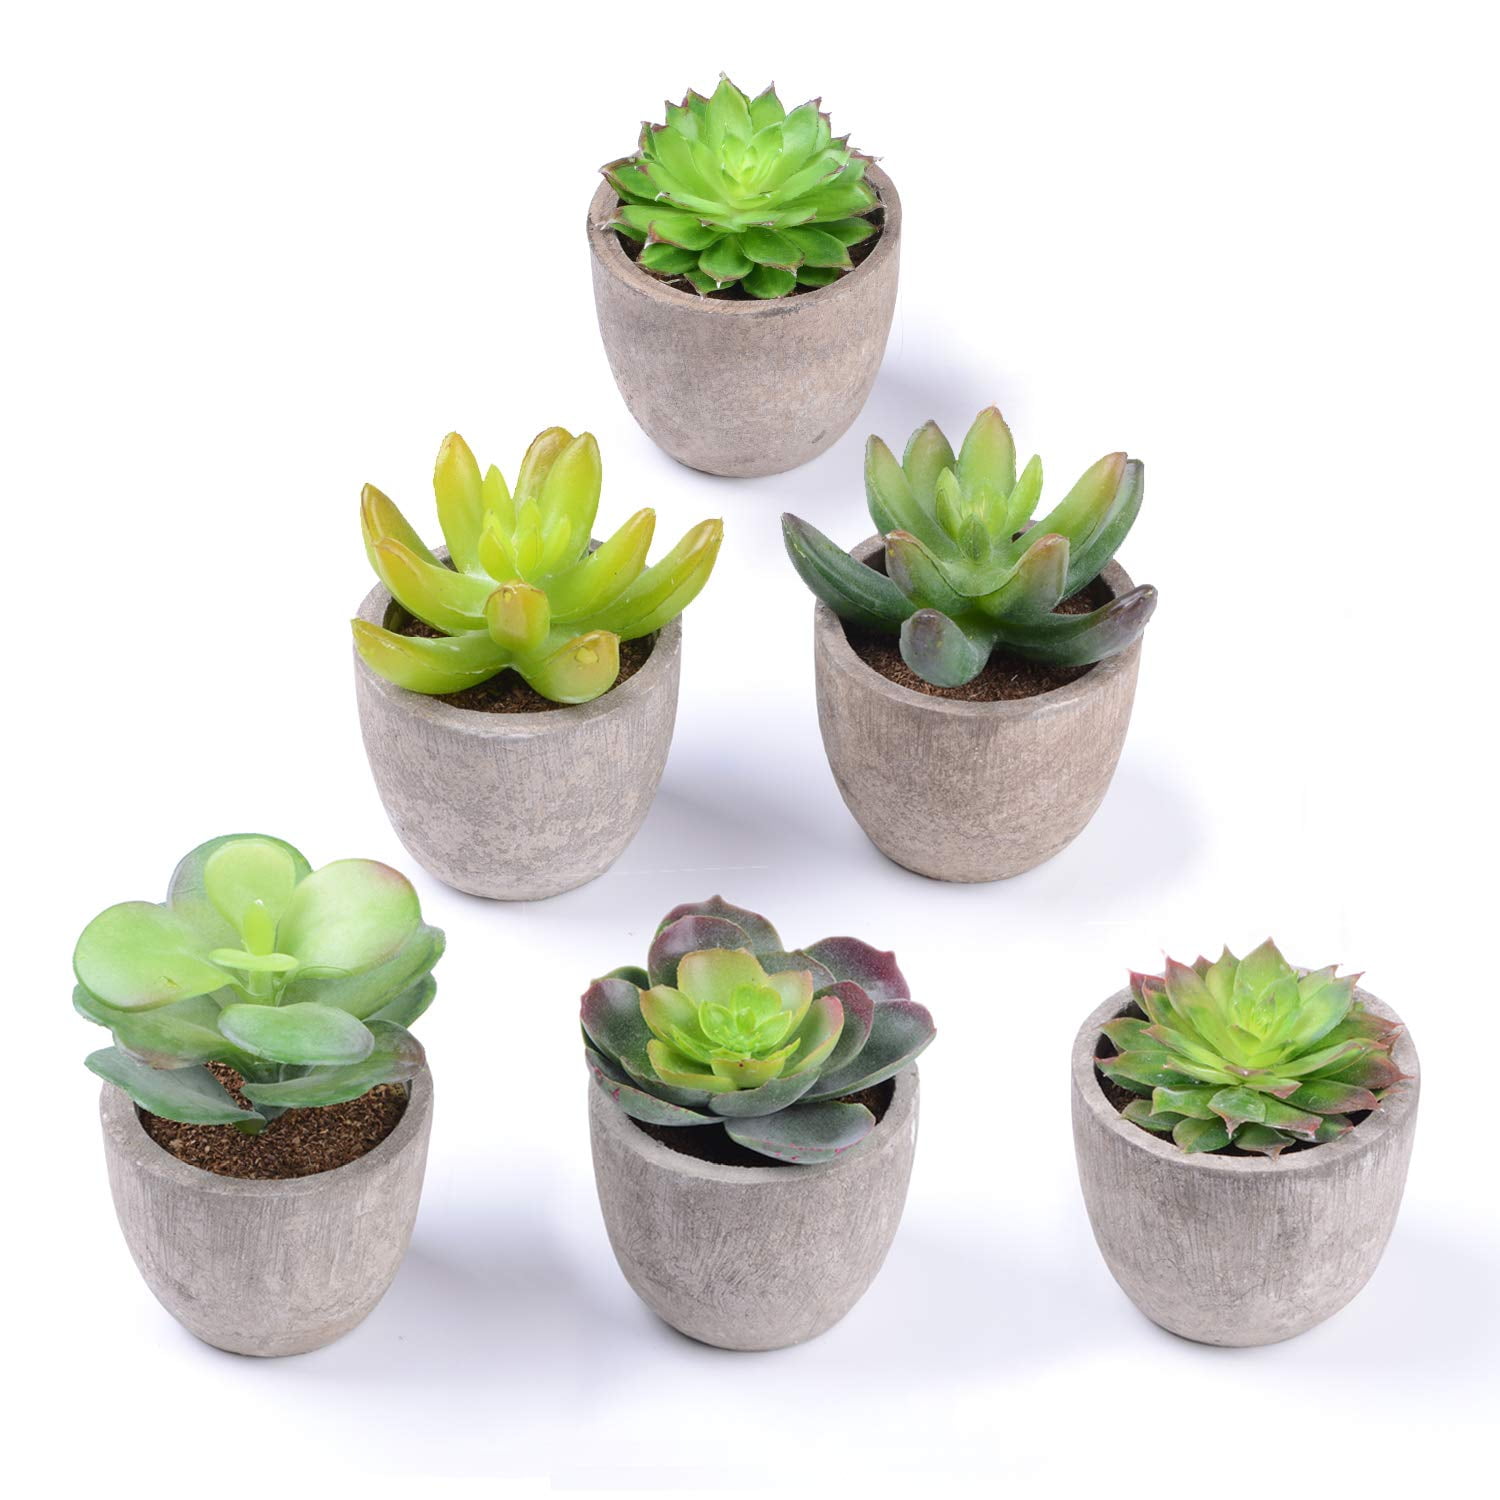 Artificial Plastic Miniature Succulents Plants Cactus Flower Garden Home Decor